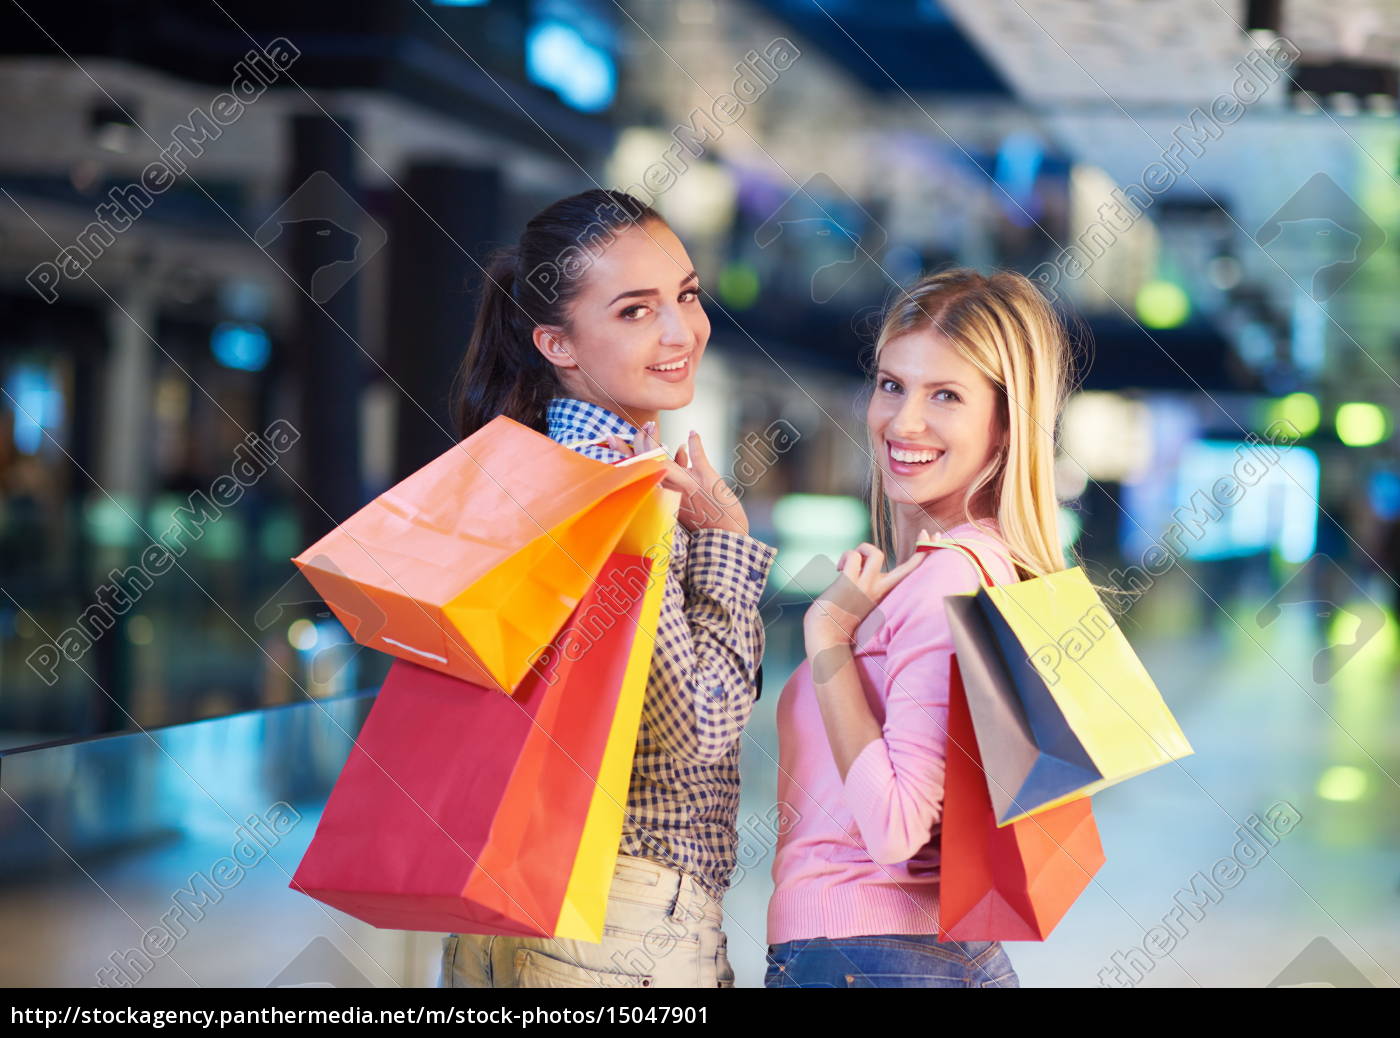 young girls shopping